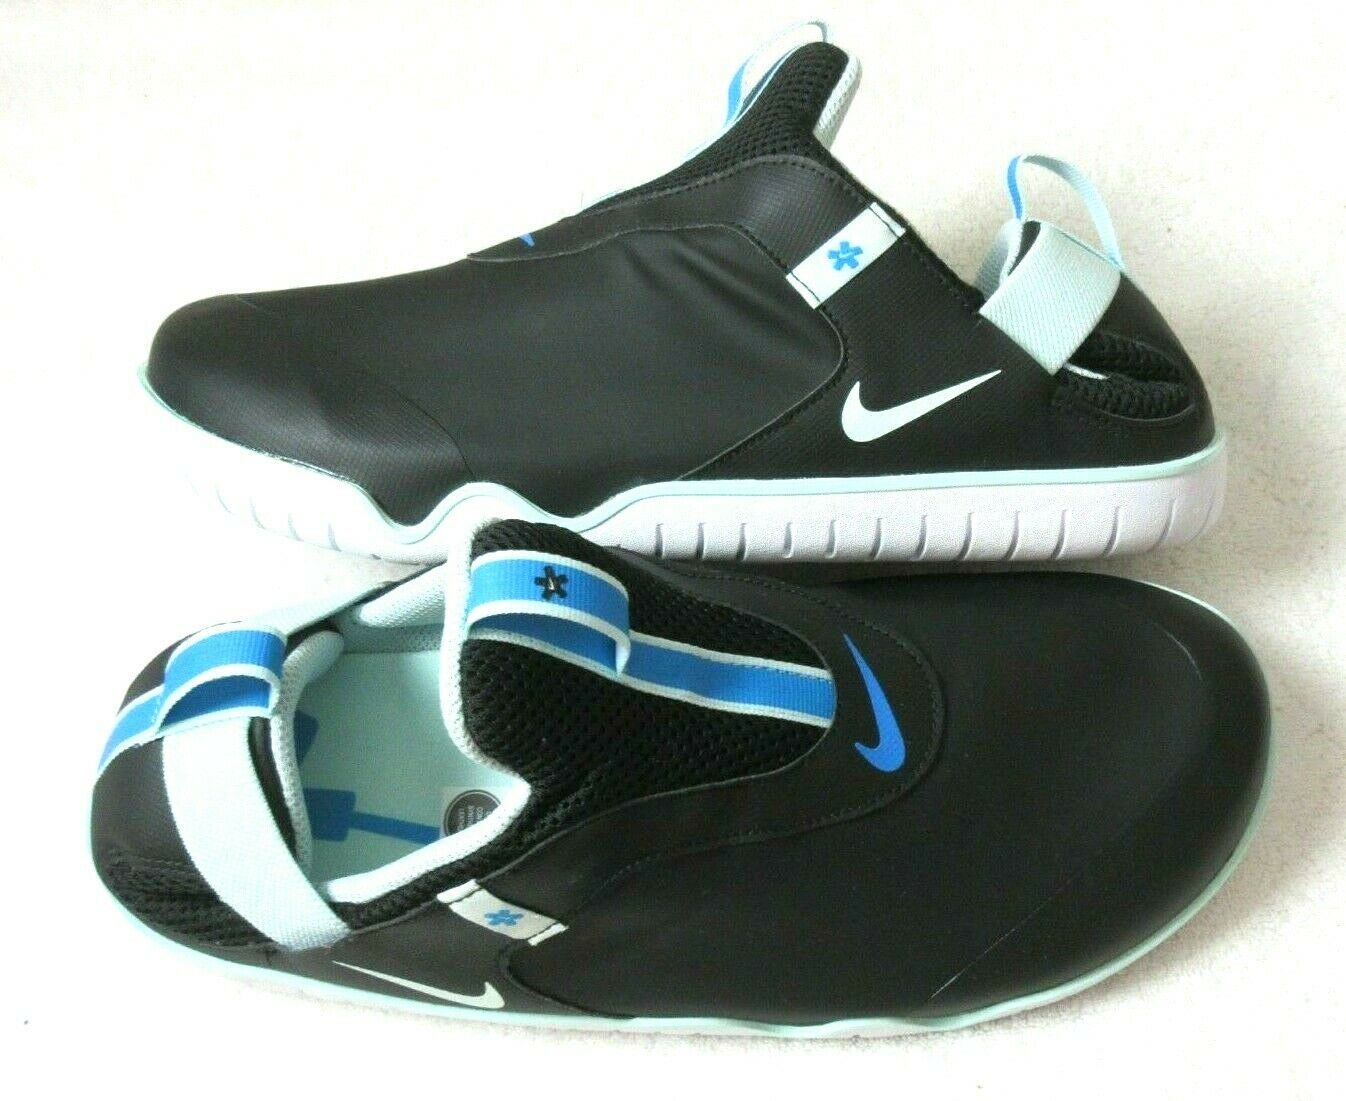 Nike Men's Air Zoom Pulse Nursing Medical Slip On Shoes Black Teal Size 12 NEW